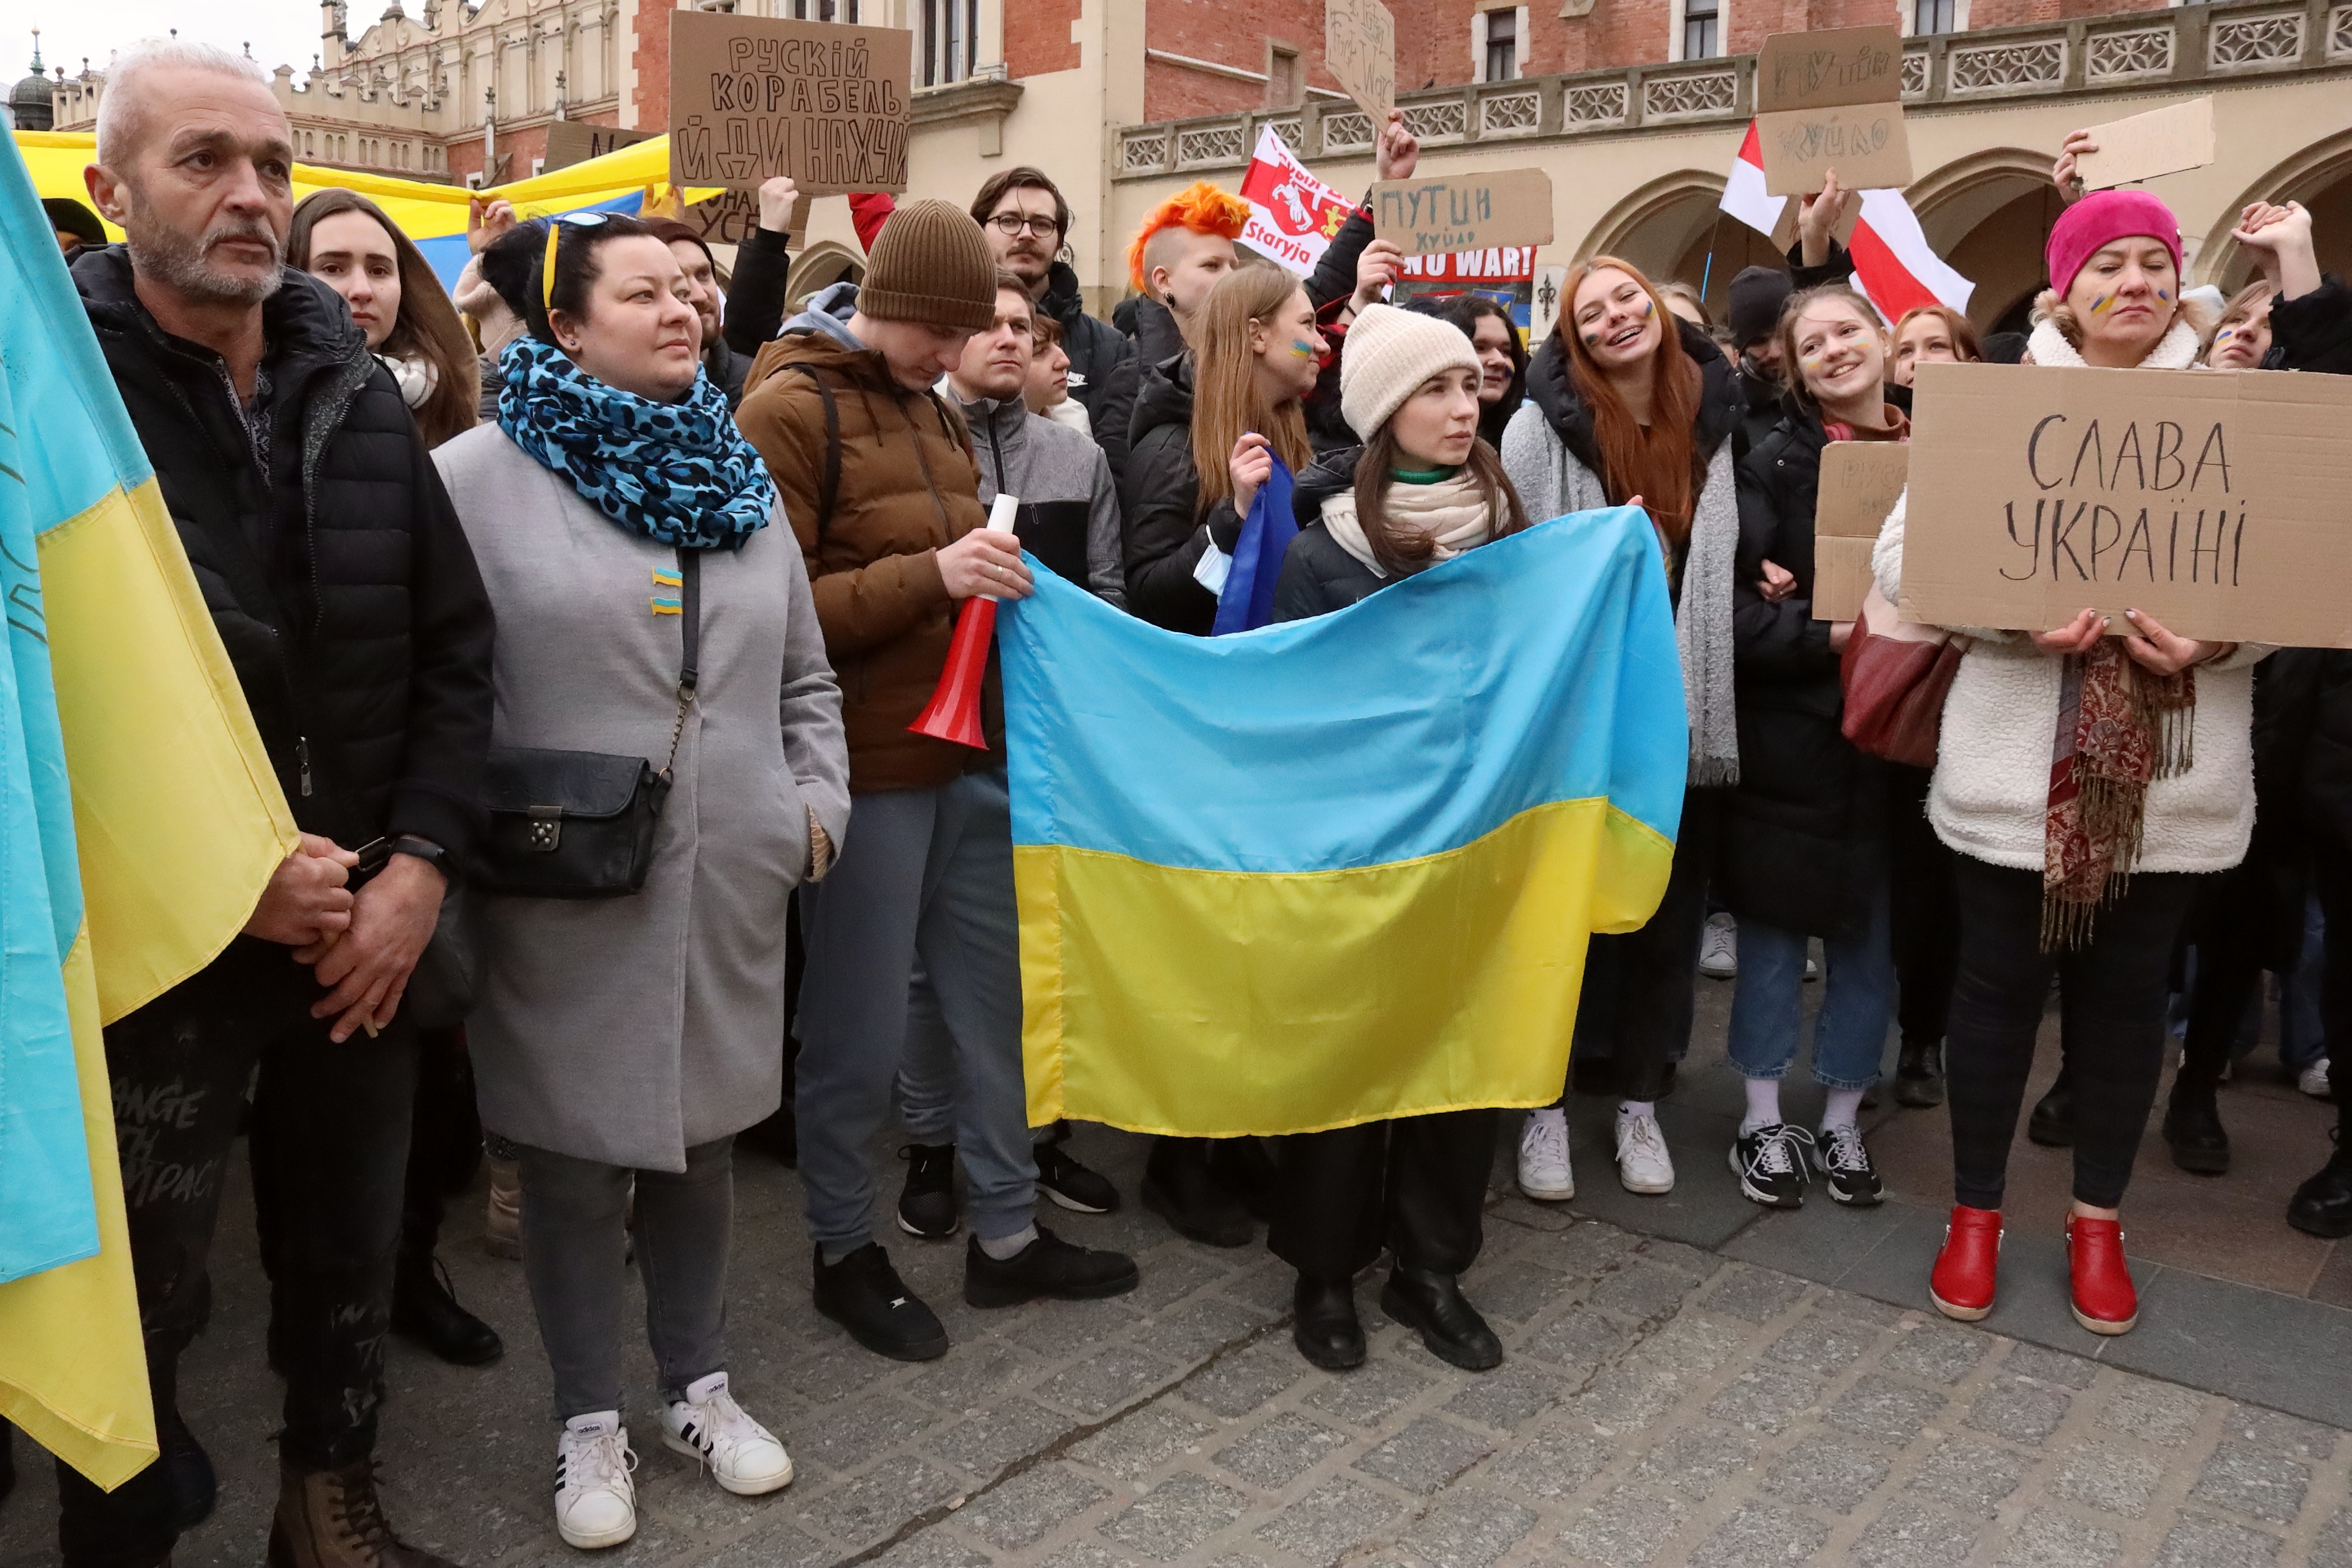 У Кракові триває масштабна акція на підтримку України [ФОТО] img 20220227 174812